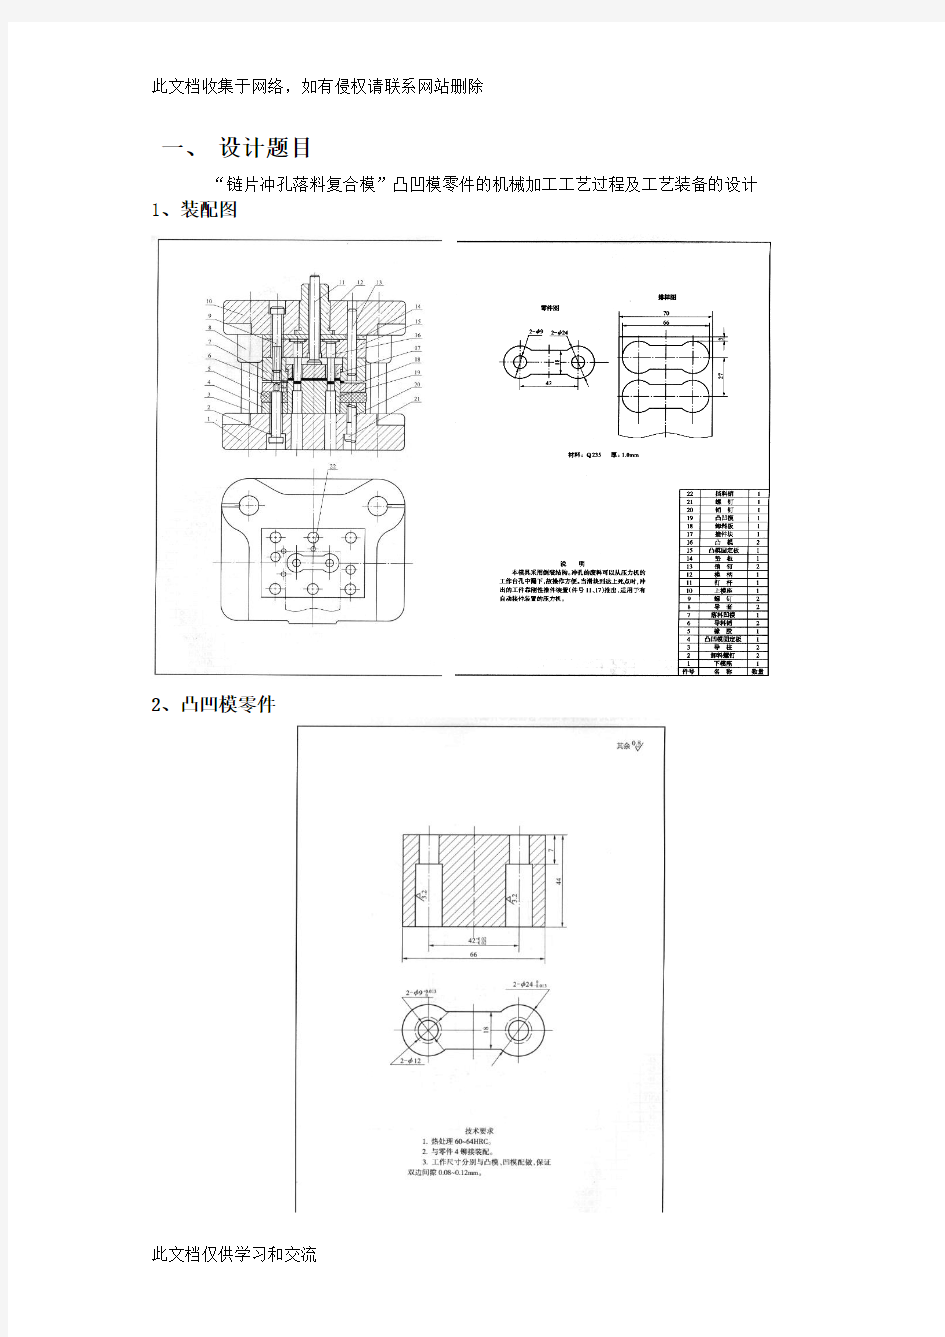 任务书-链片冲孔落料复合模”凸凹模零件的机械加工工艺过程及工艺装备的设计电子教案